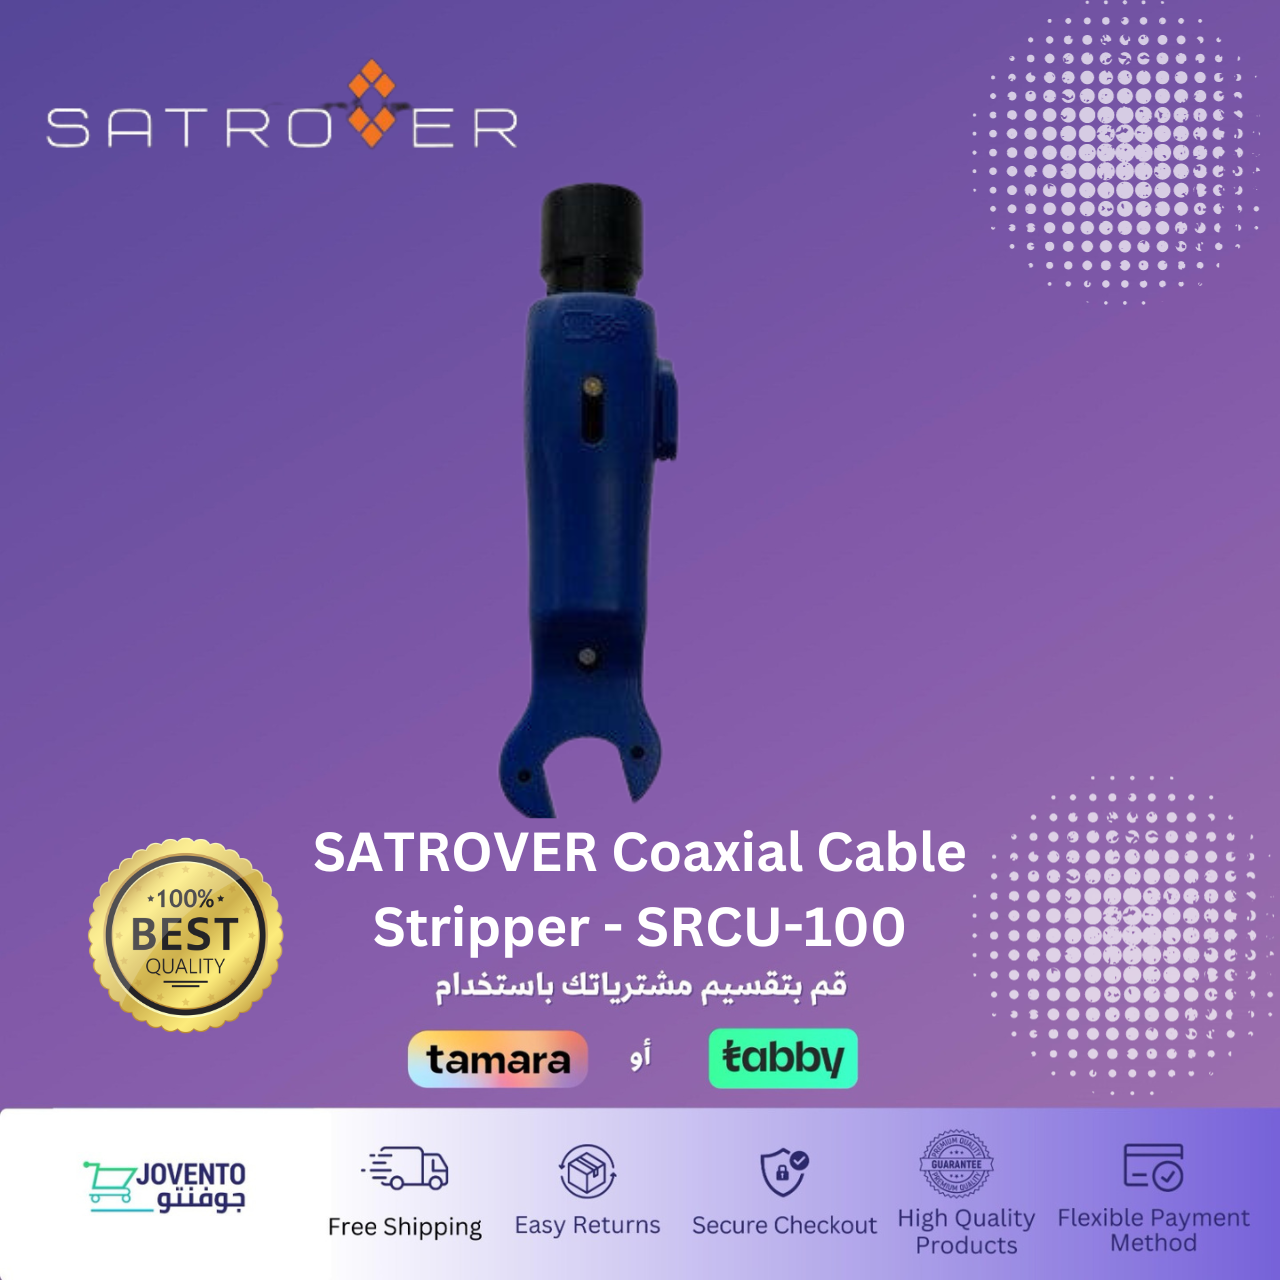 SATROVER Coaxial Cable Stripper - SRCU-100